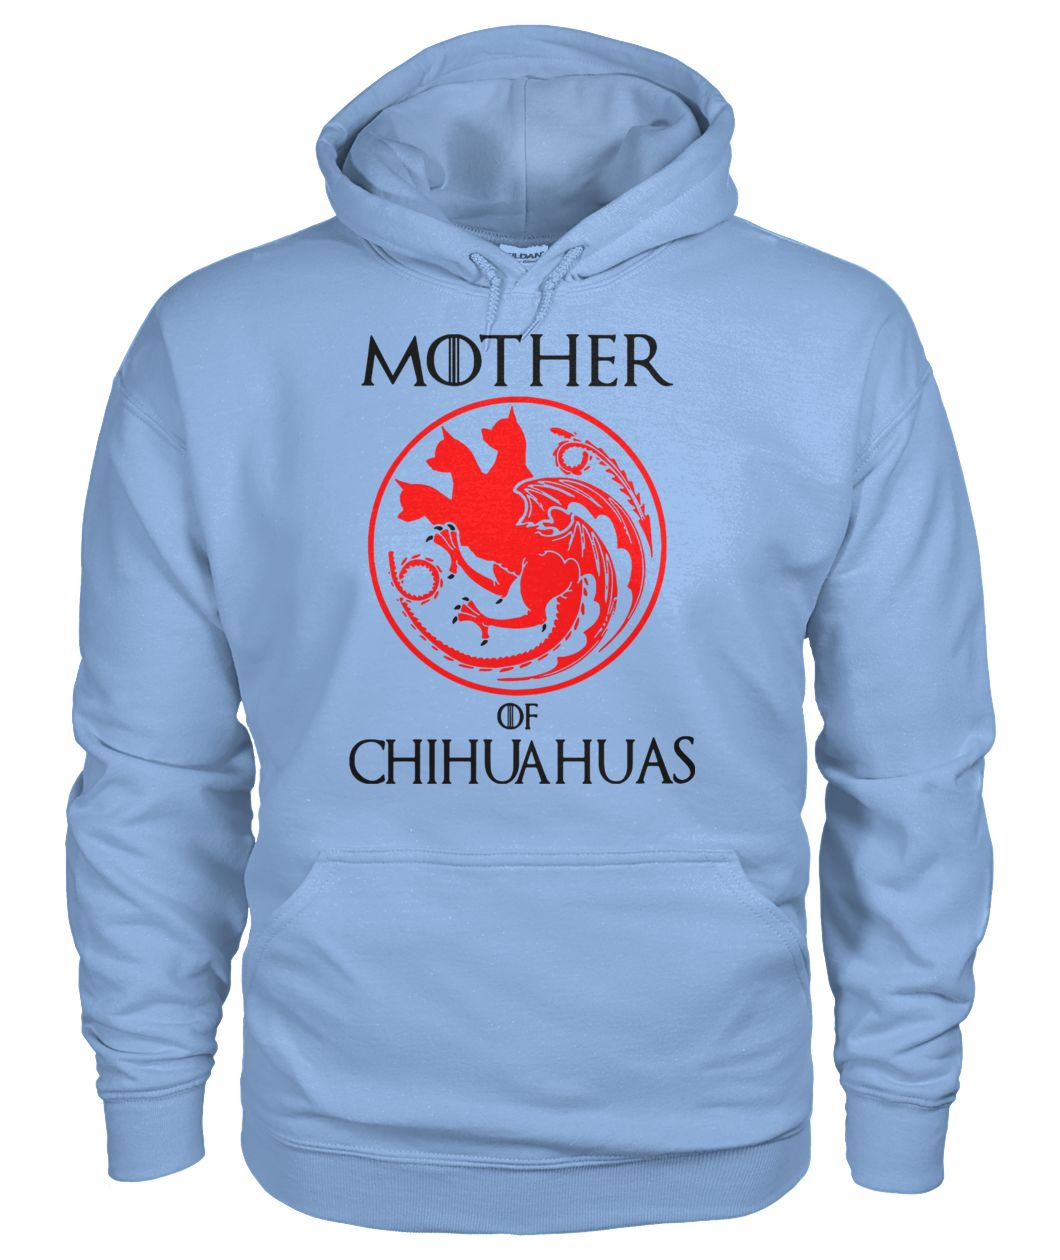 Game of thrones mother of chihuahuas gildan hoodie